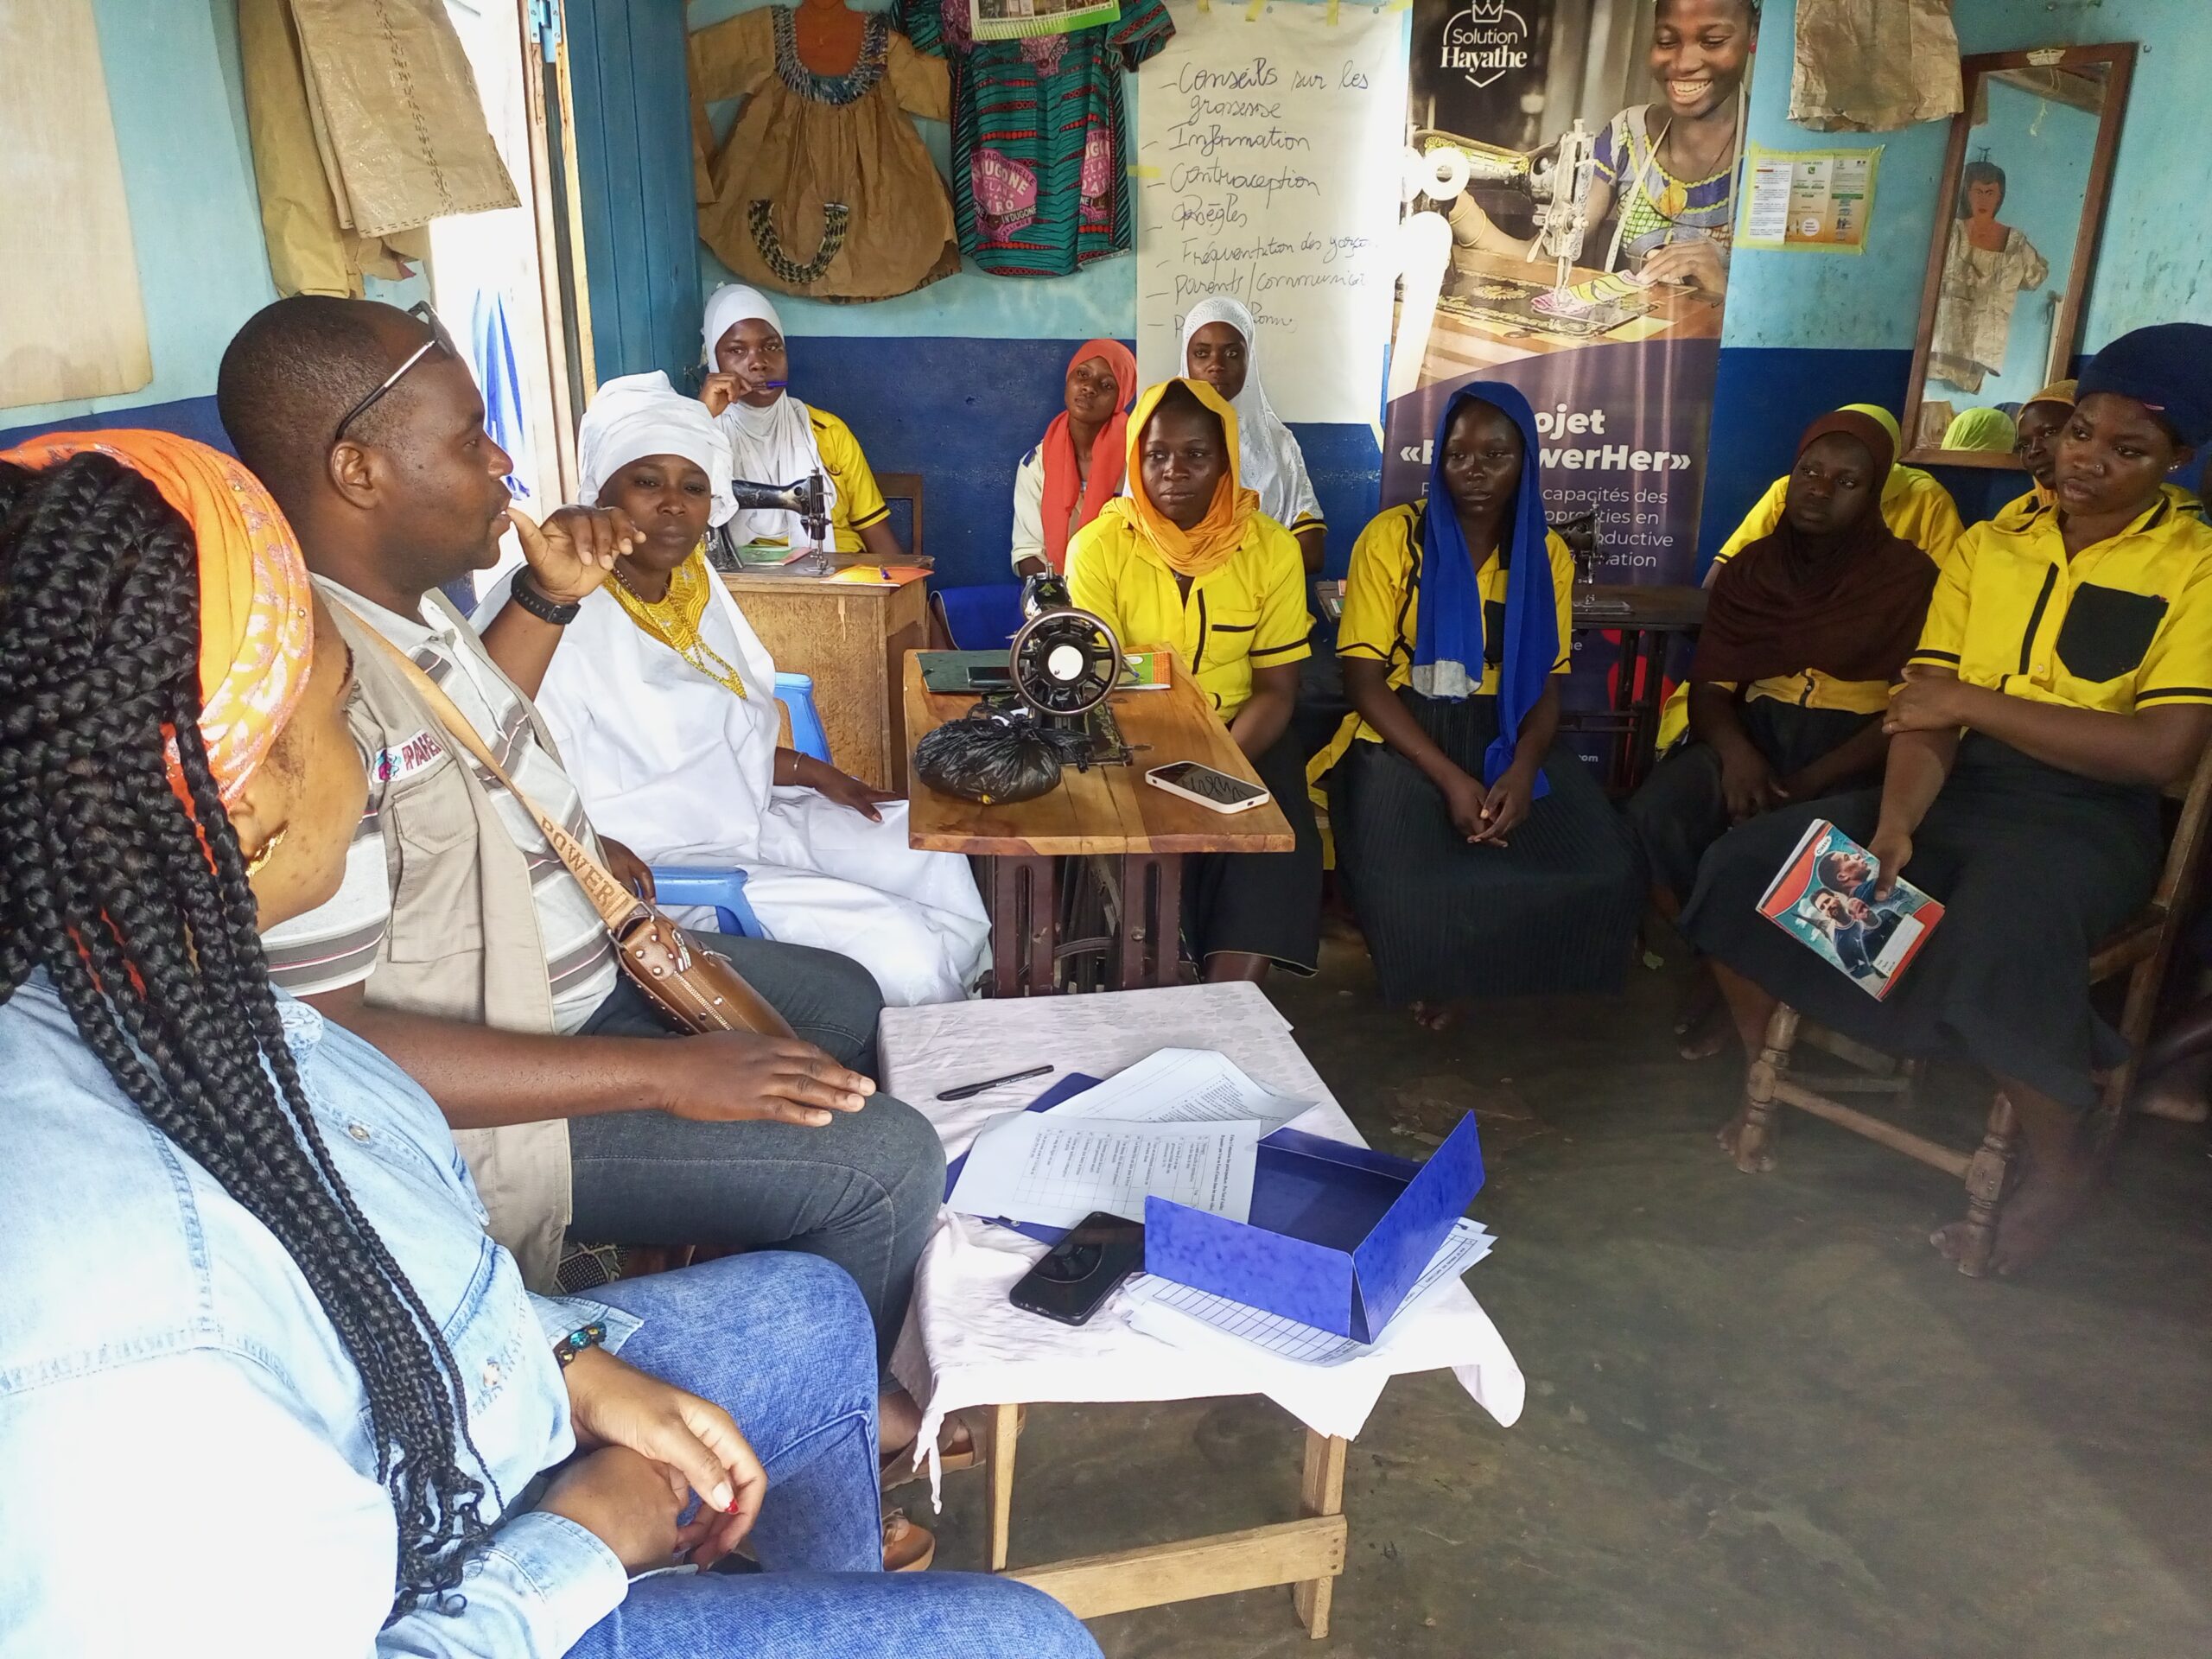 Les apprenties couturières de Kpangalam Ataworo renforcent leurs connaissances sur les conséquences des grossesses précoces en milieu d’apprentissage et sur les méthodes contraceptives pour mettre fin aux grossesses précoces, aux mariages précoces et forcés